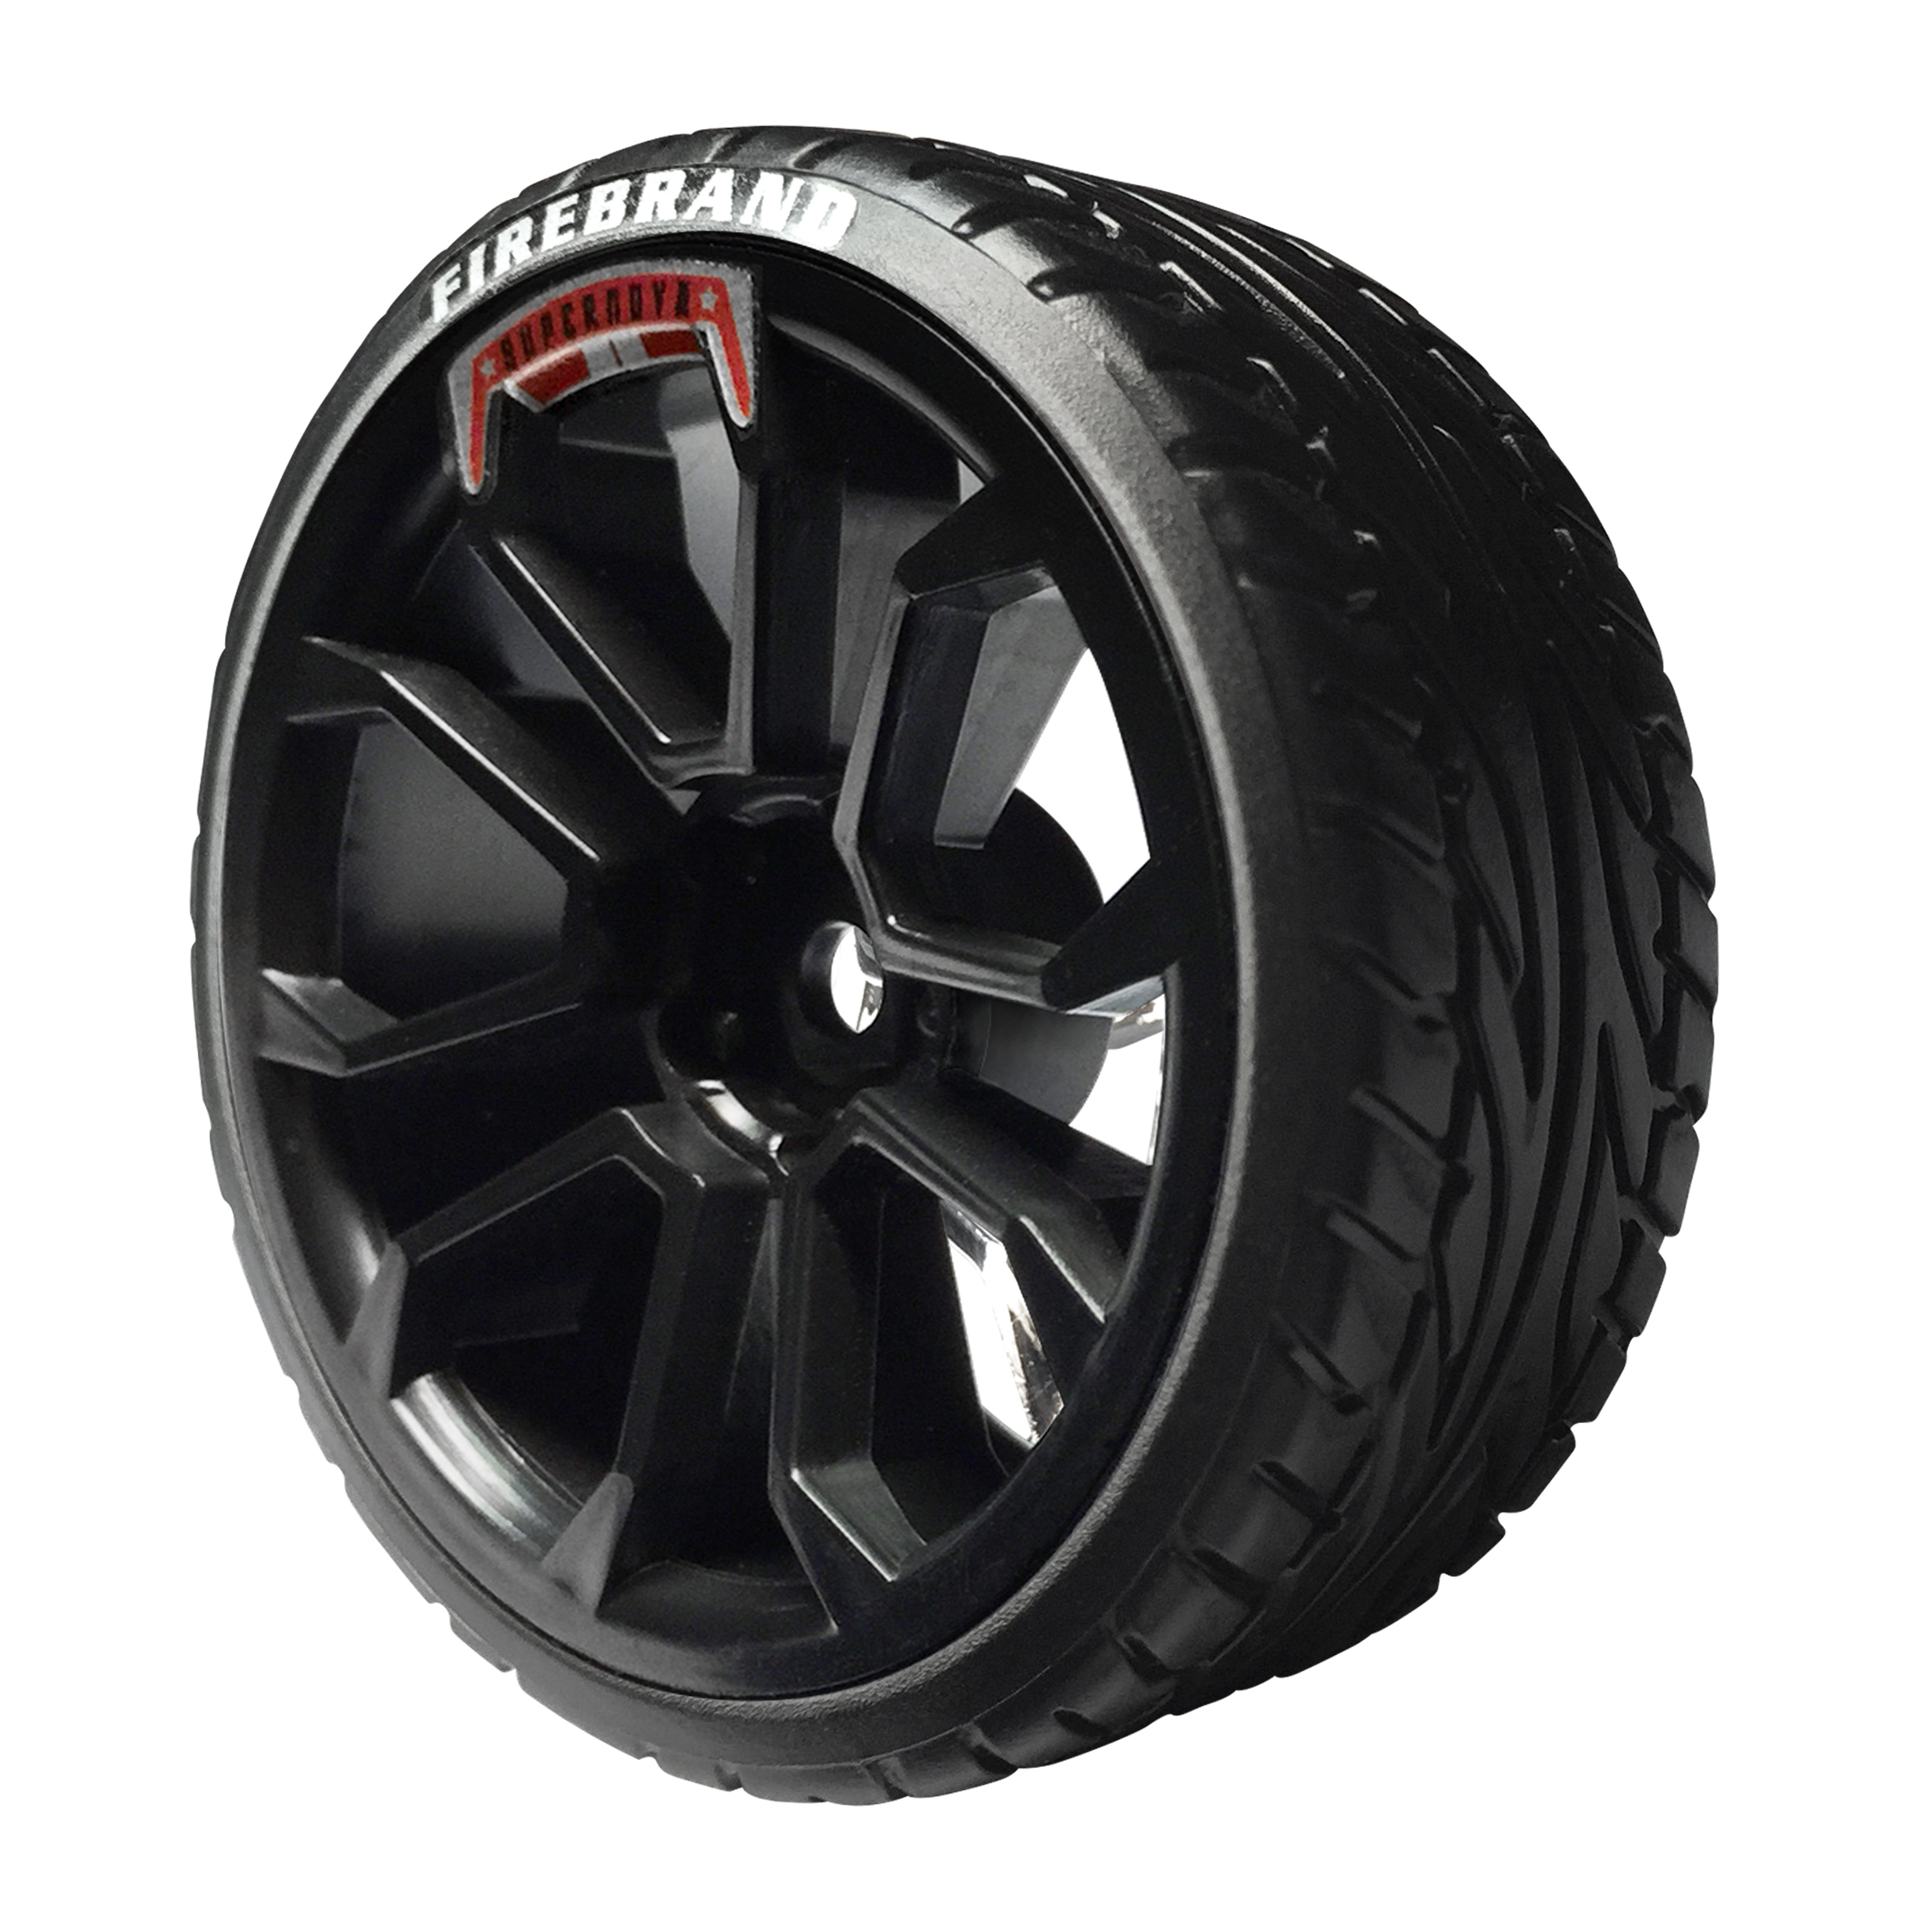 RC 1:10 On-Road Drift Car Hard Plastic Drift Tyre Tires & Wheel Rim 9077-5015 